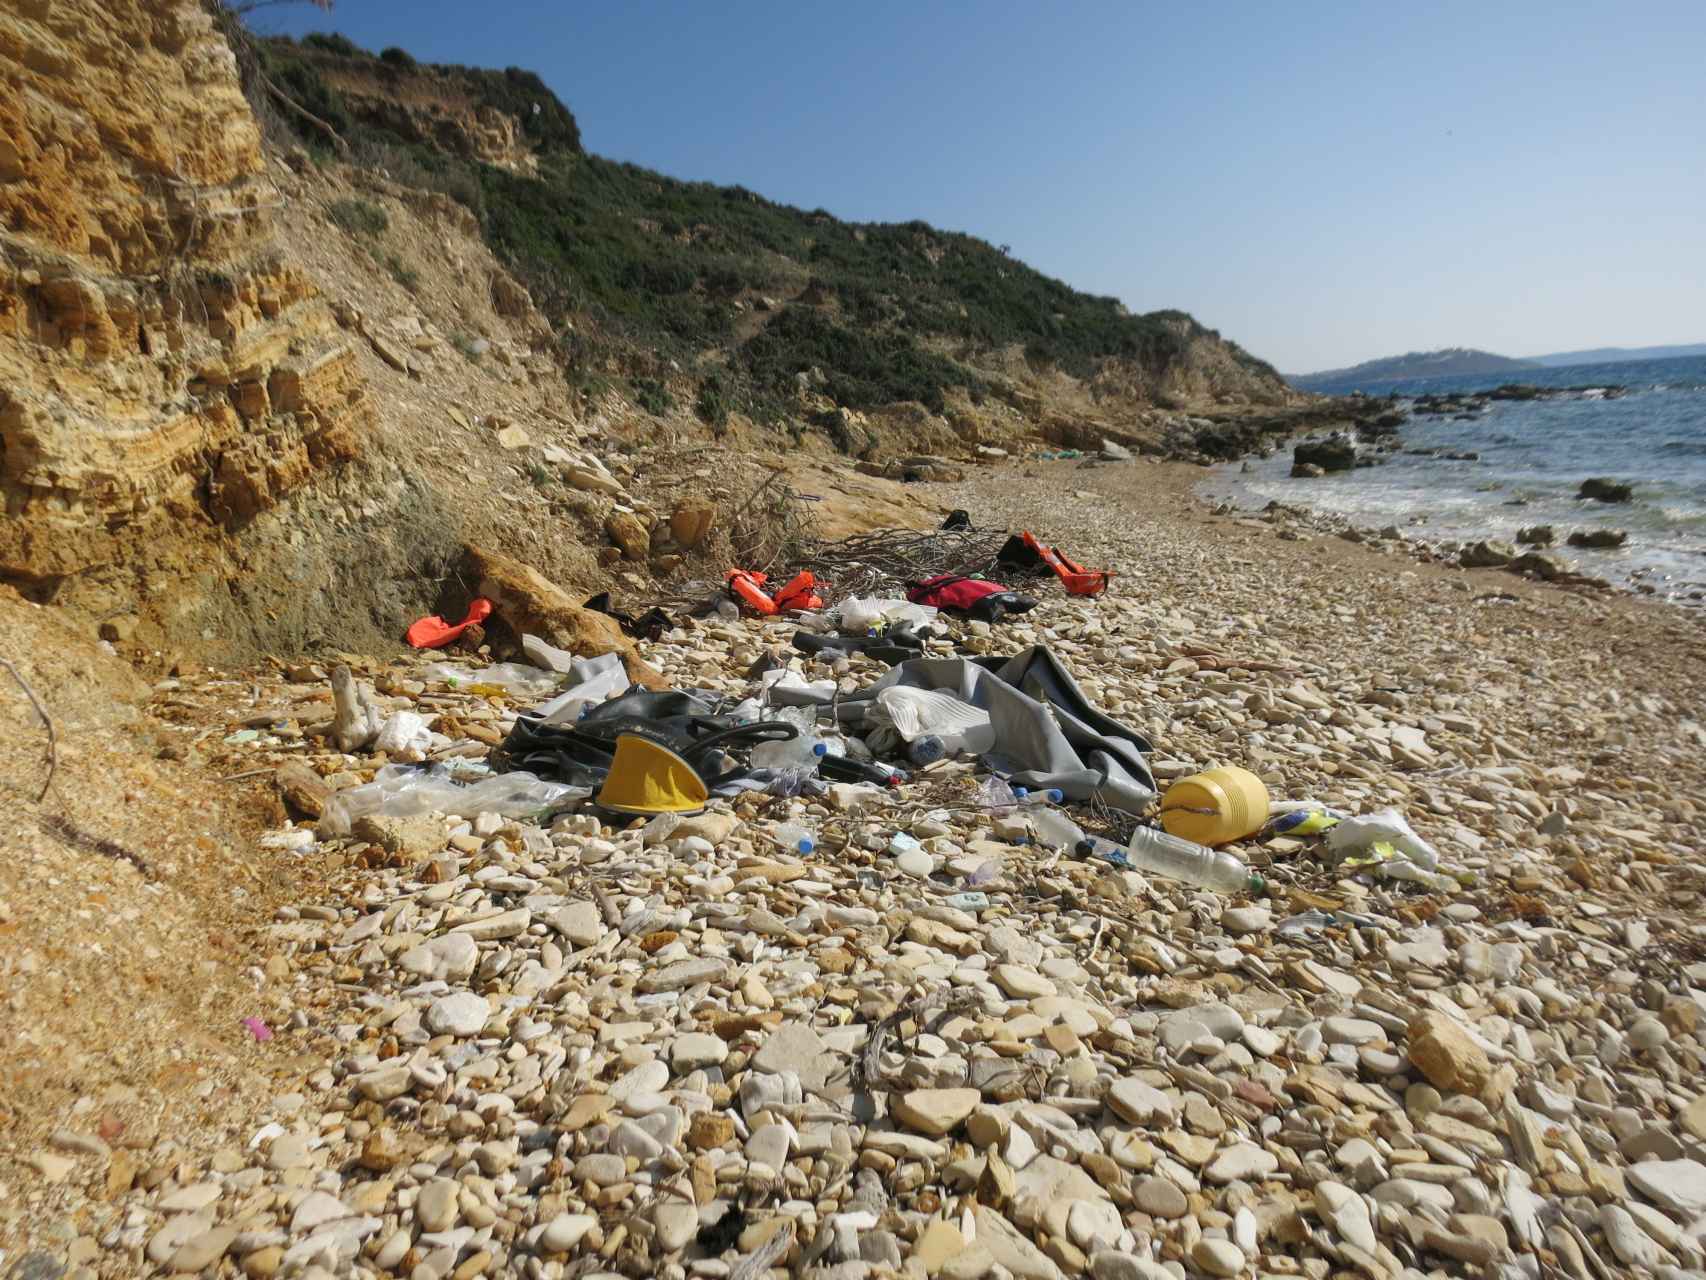 Una de las playas turcas repleta de restos de los refugiados que por allí pasaron.